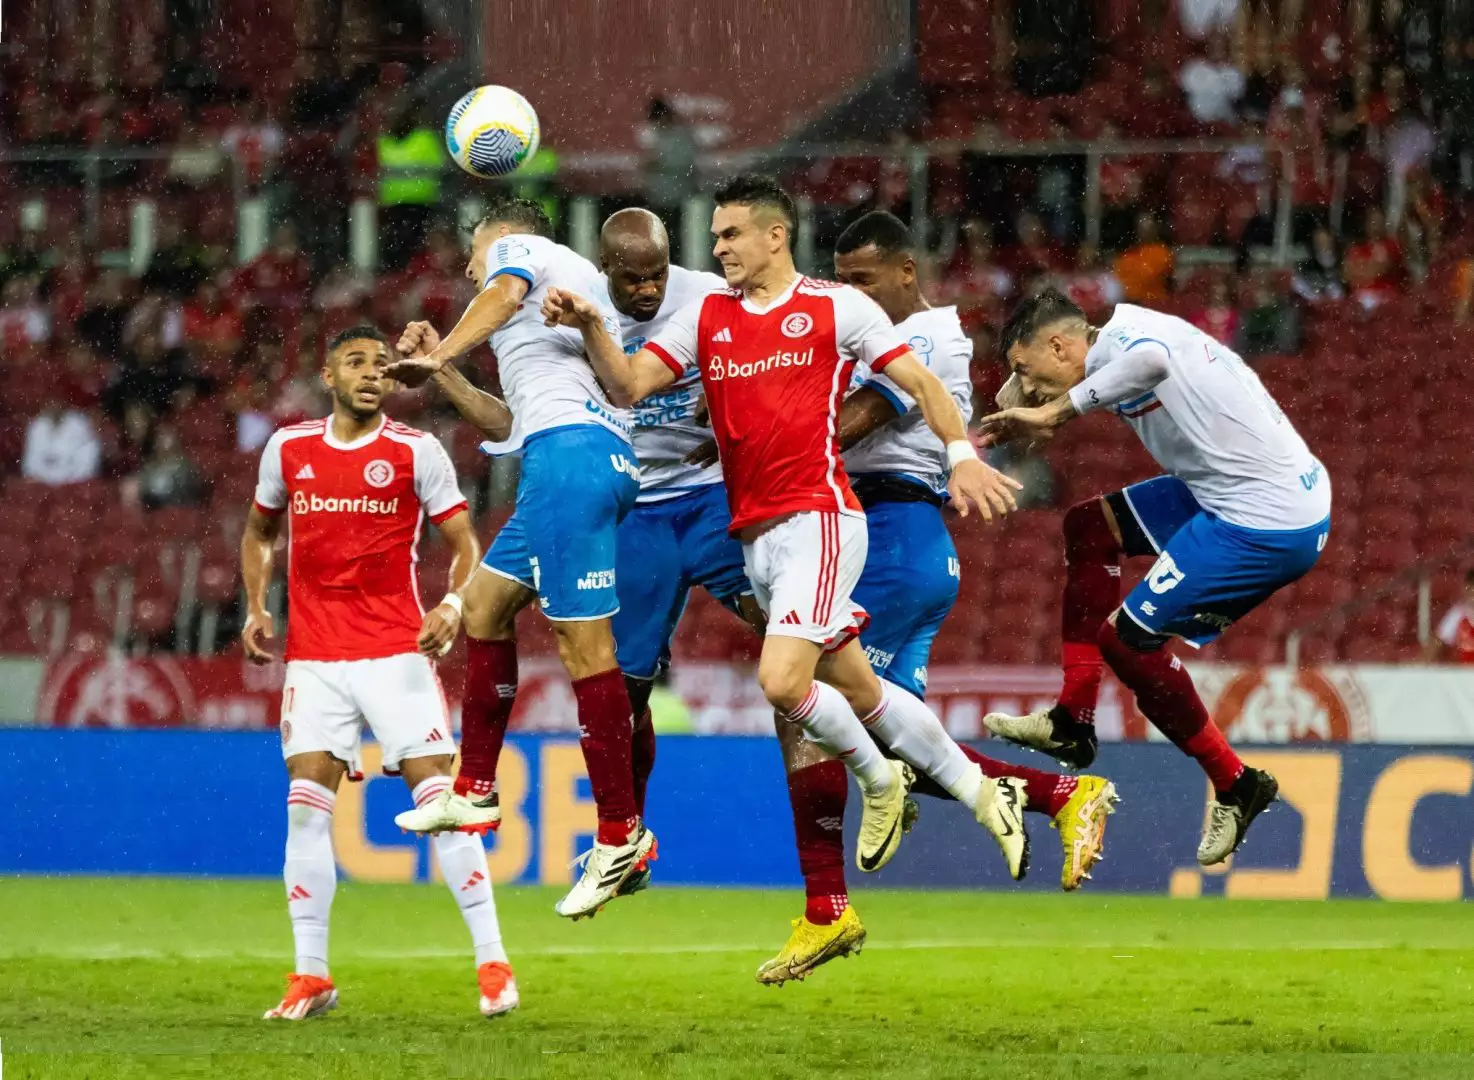 Gols colorados foram marcados por Wesley e Fernando no segundo tempo. (Foto: Letícia Martins/E.C. Bahia)